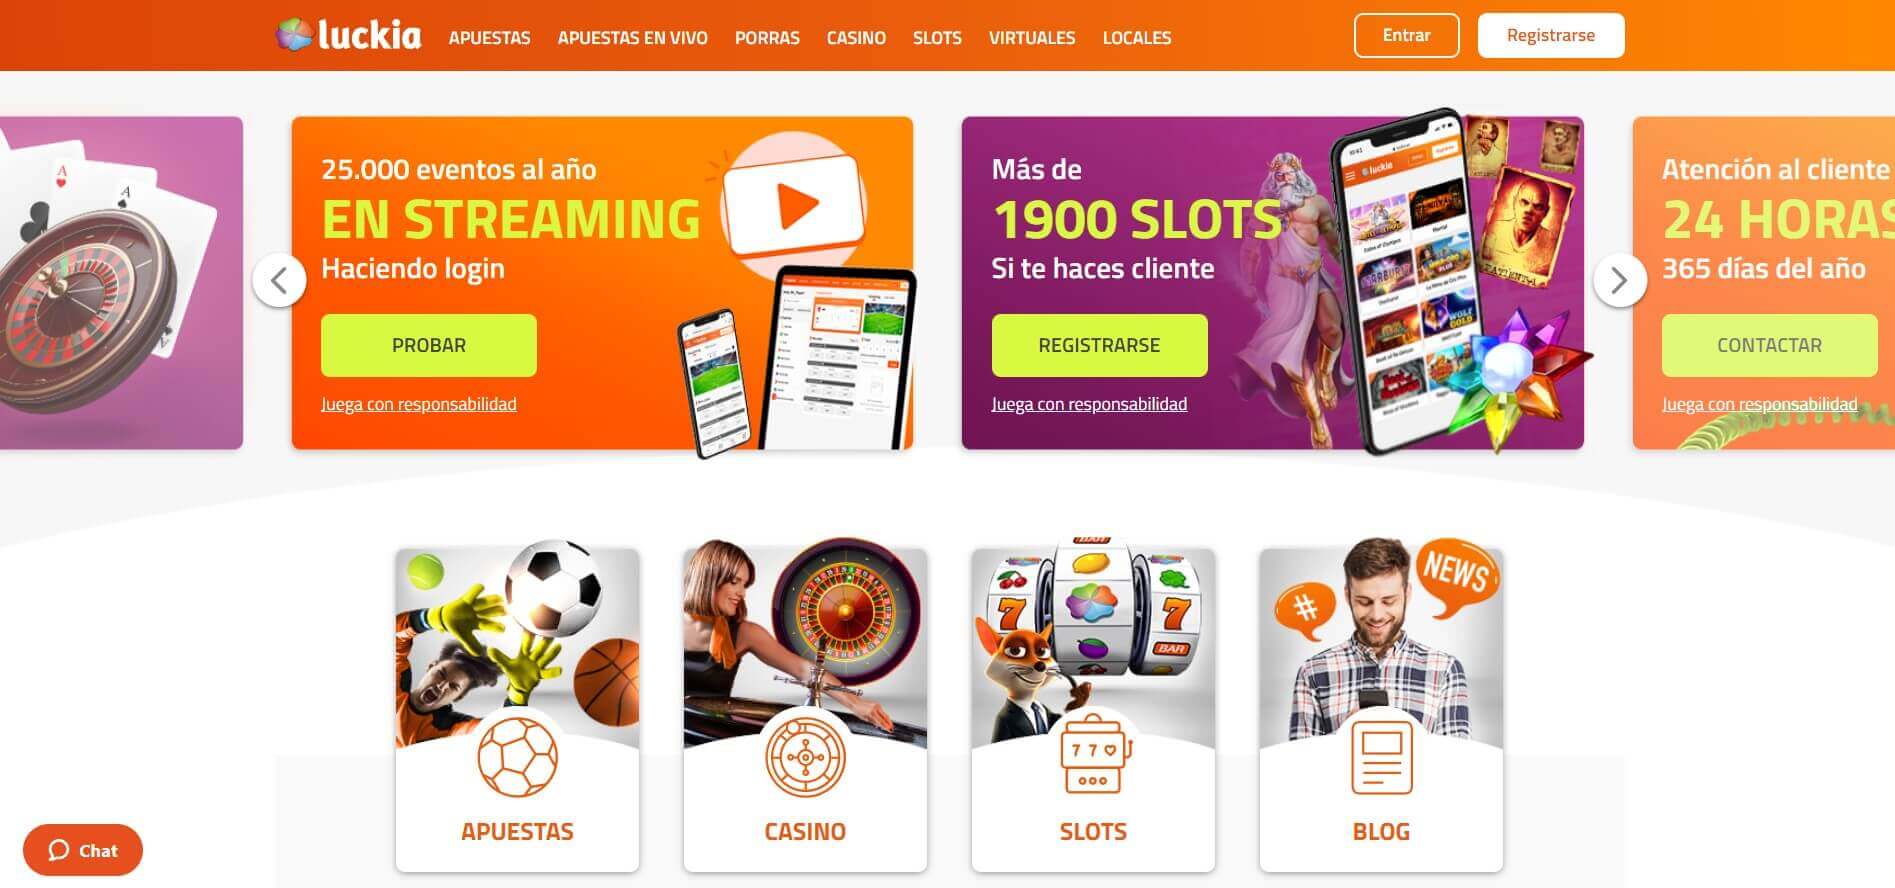 luckia casino online en espana